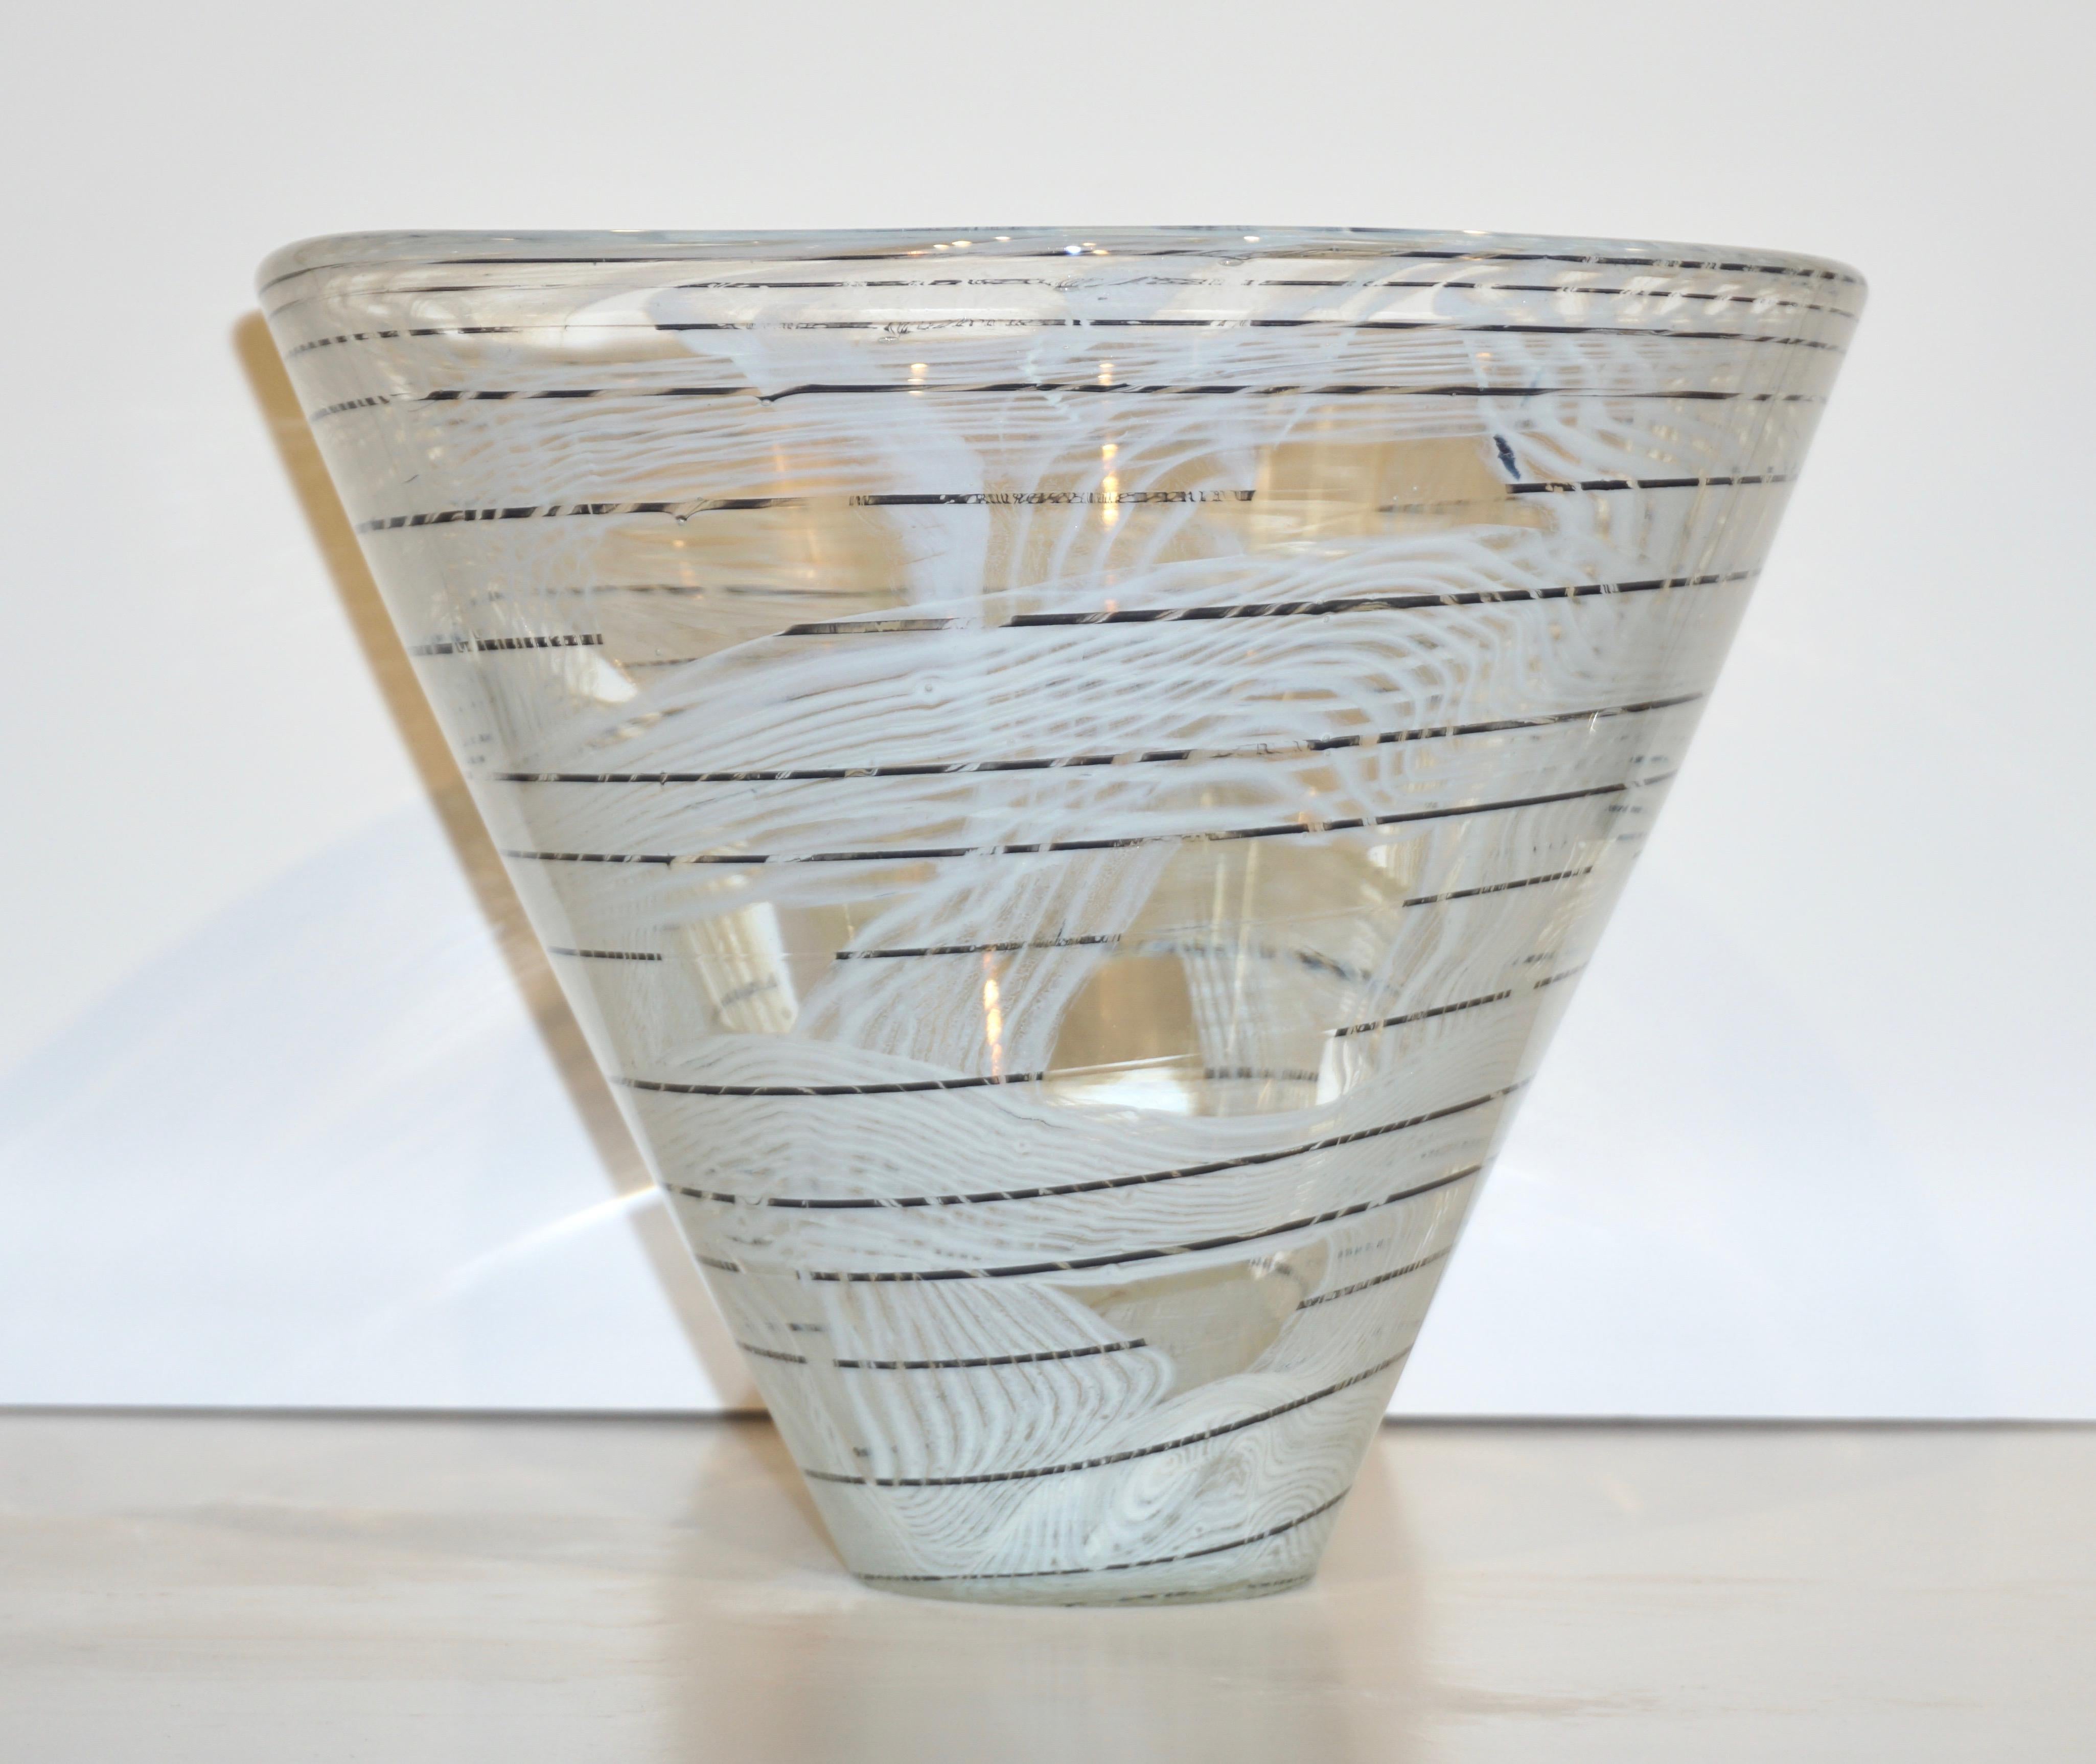 Rare paire de vases italiens des années 1950 signés Venini Murano, soufflés à la bouche en verre de Murano cristallin de forme conique organique, décorés d'une ligne noire en spirale soulignant une murrine blanche de motif abstrait comme une